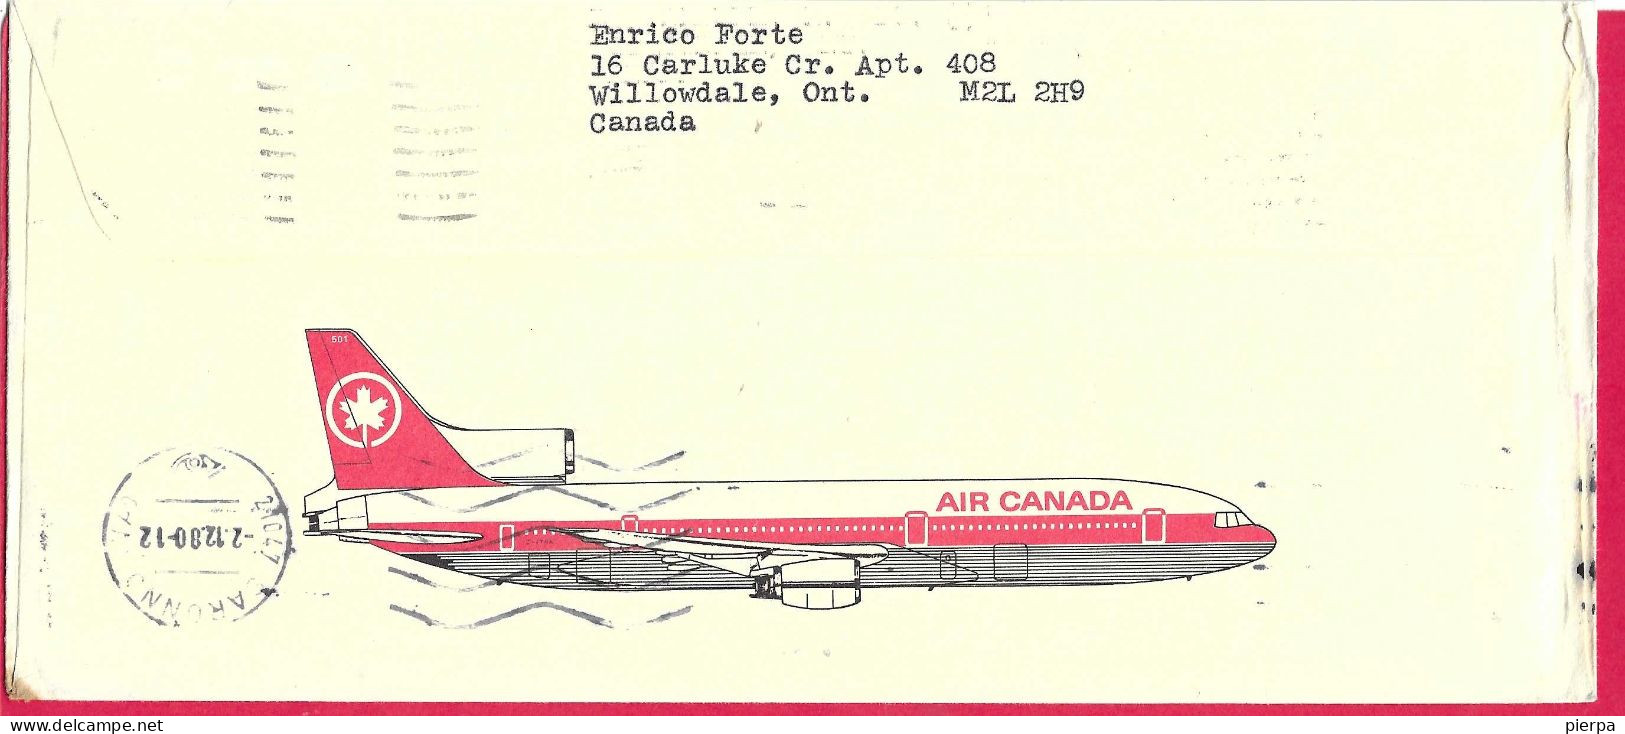 CANADA - BUSTA INTESTATA AIR CANADA - ANNULLO " POSTES CANADA POST*24.XI. 1980" SU BUSTA COMMERCIALE - Luftpost